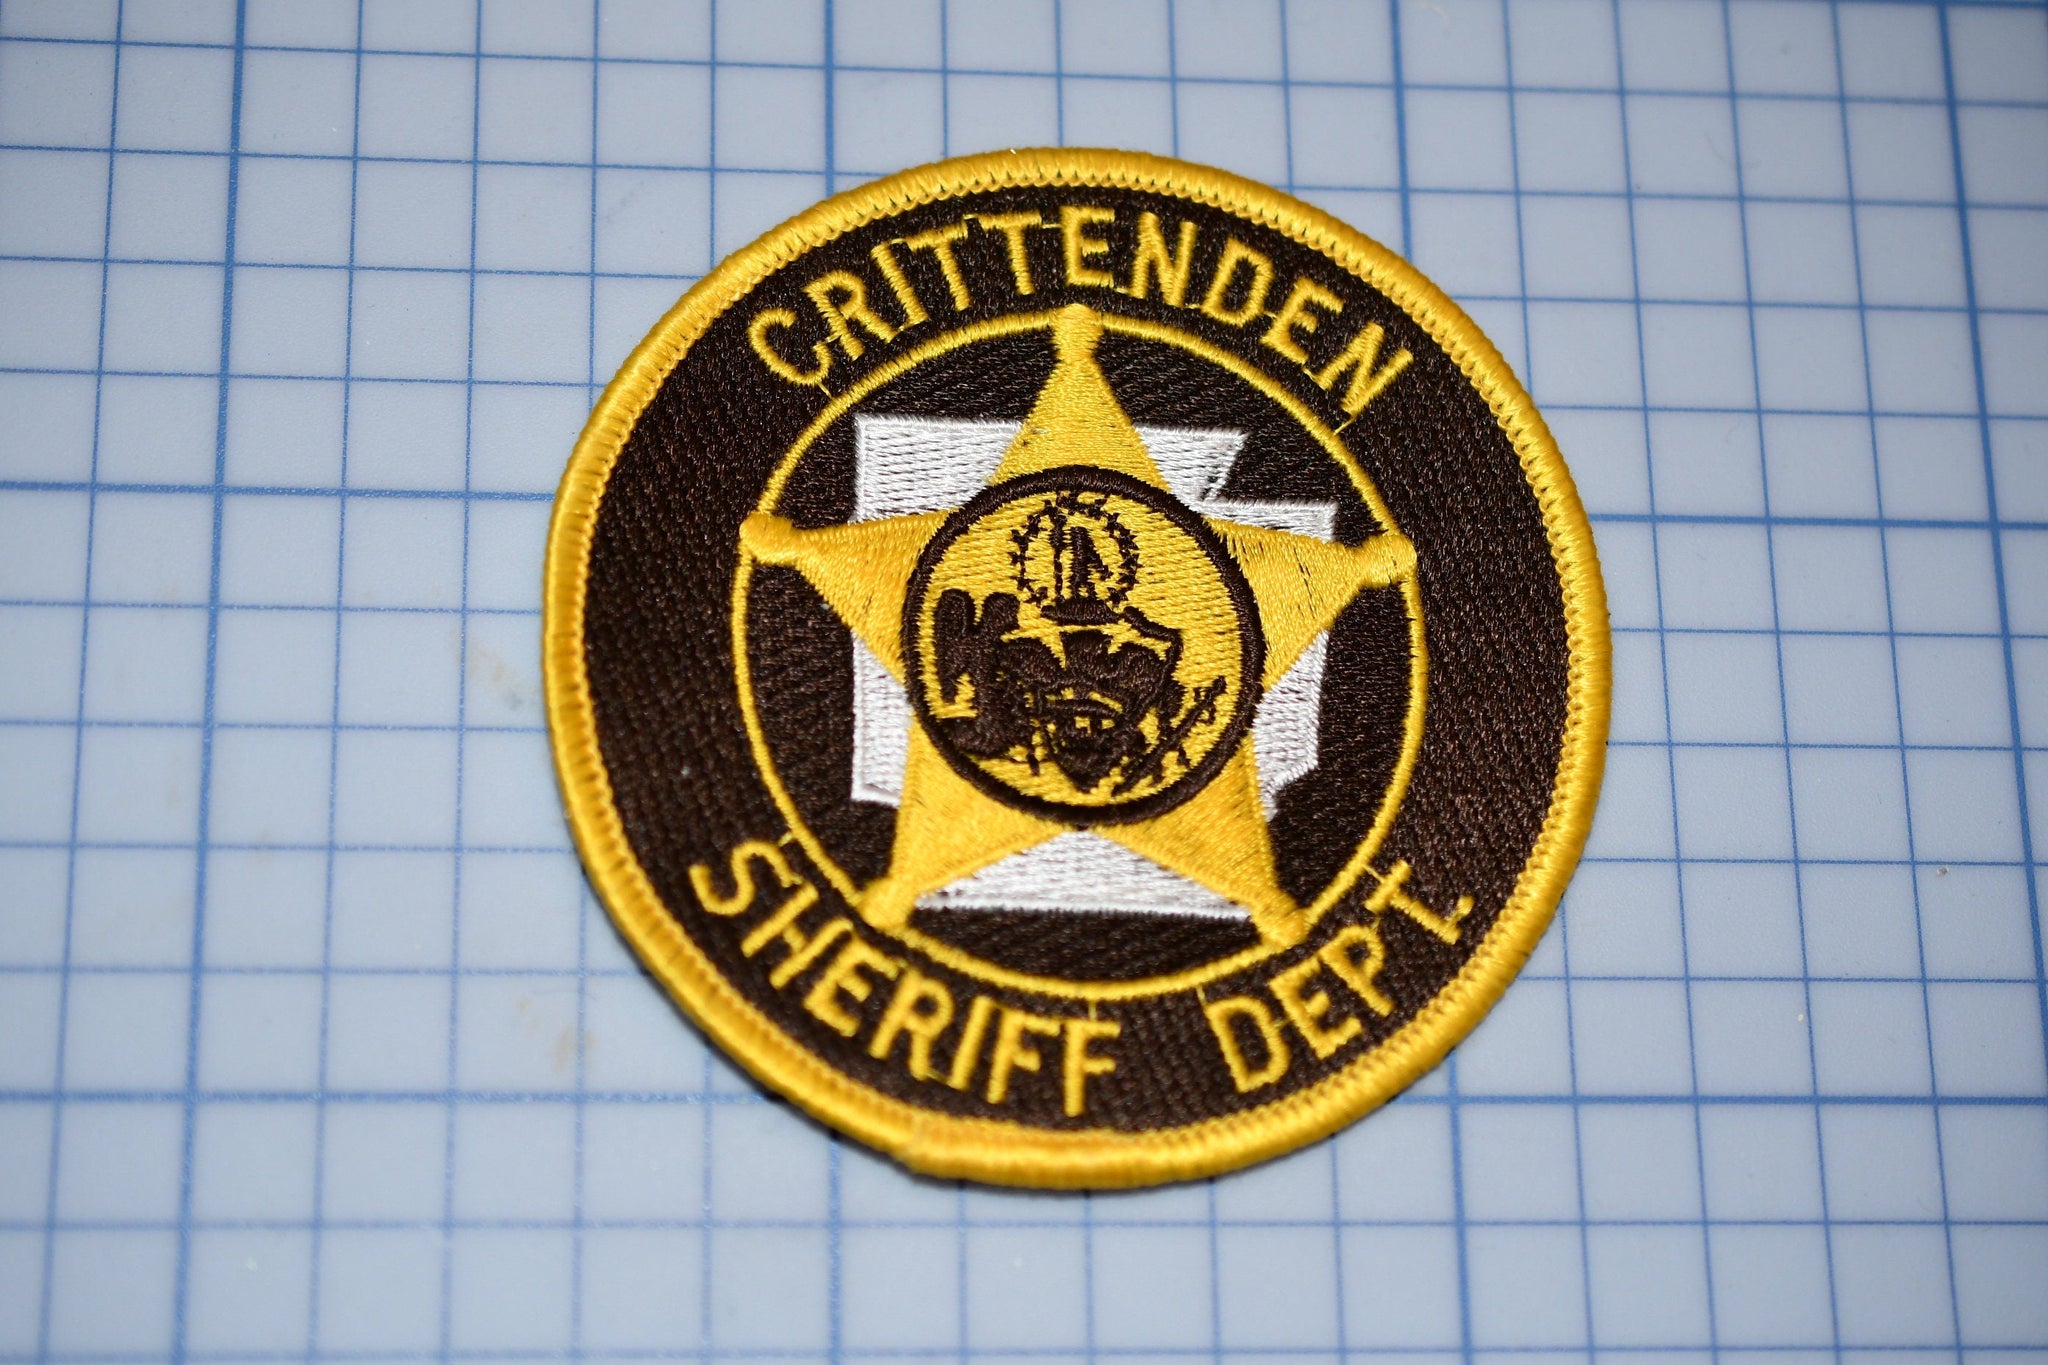 Crittenden Arkansas Sheriff Department Patch (S3-279)